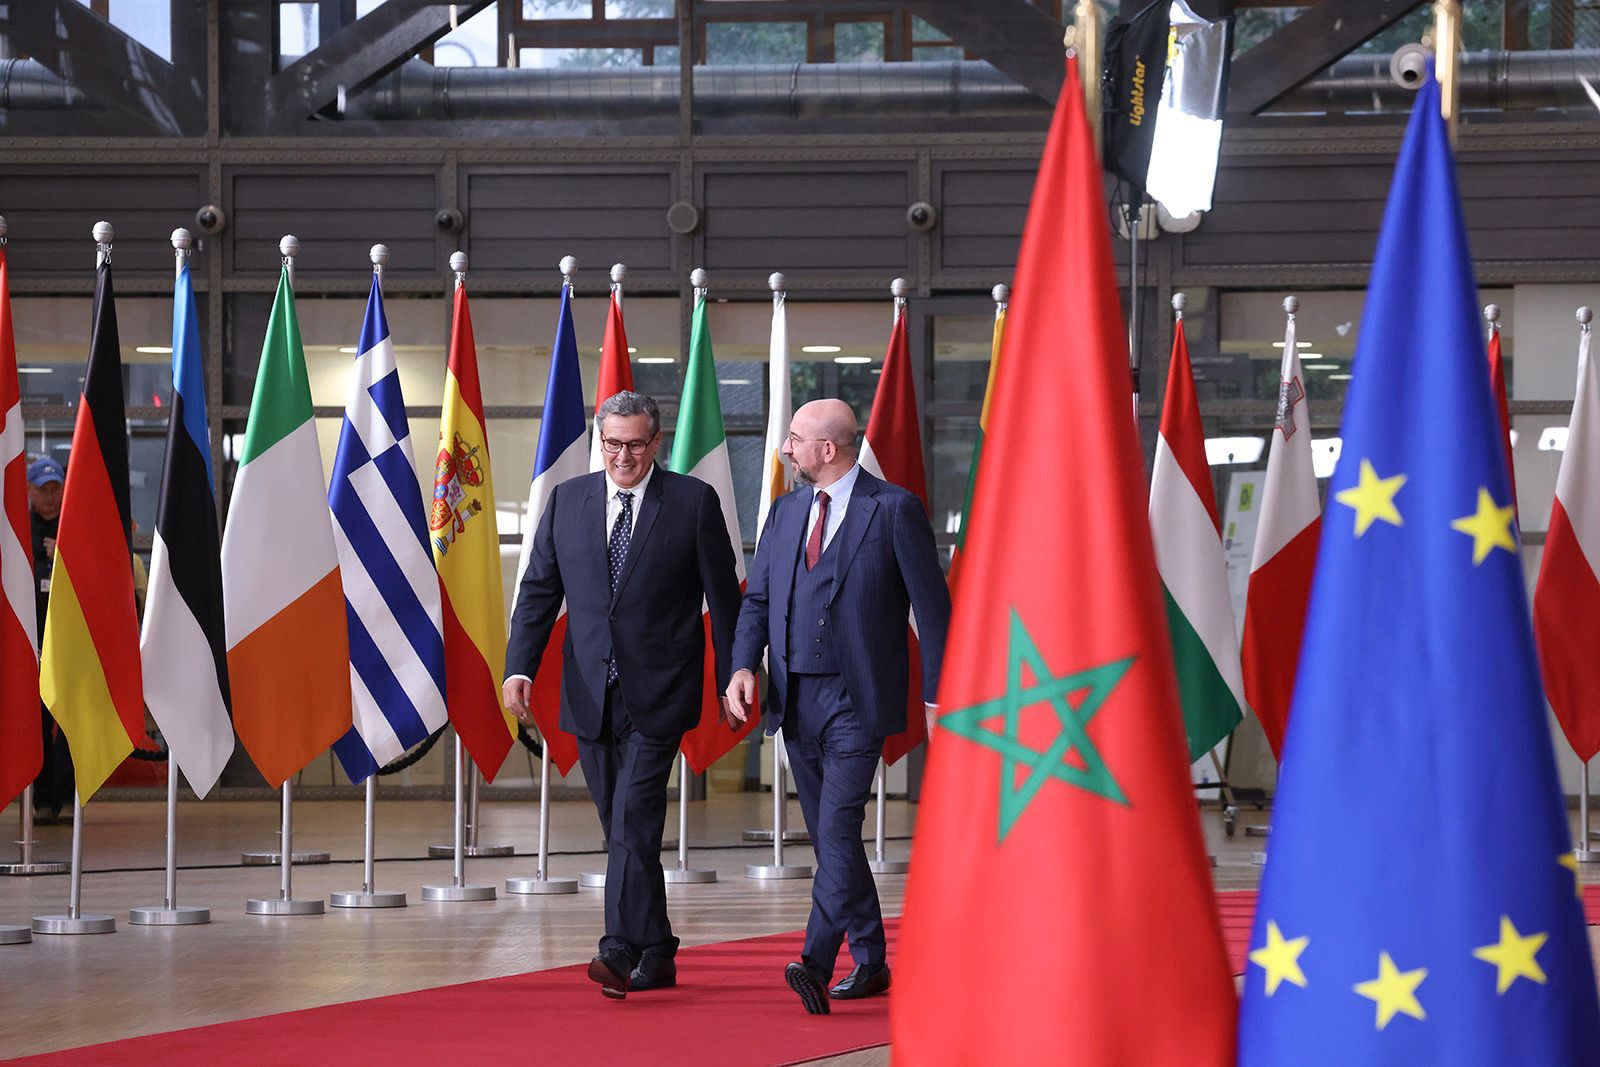 إثر لقائهما مع أخنوش.. رئيسا مجلس الاتحاد الأوروبي ووزراء بلجيكا يشيدان بالعلاقات مع المغرب